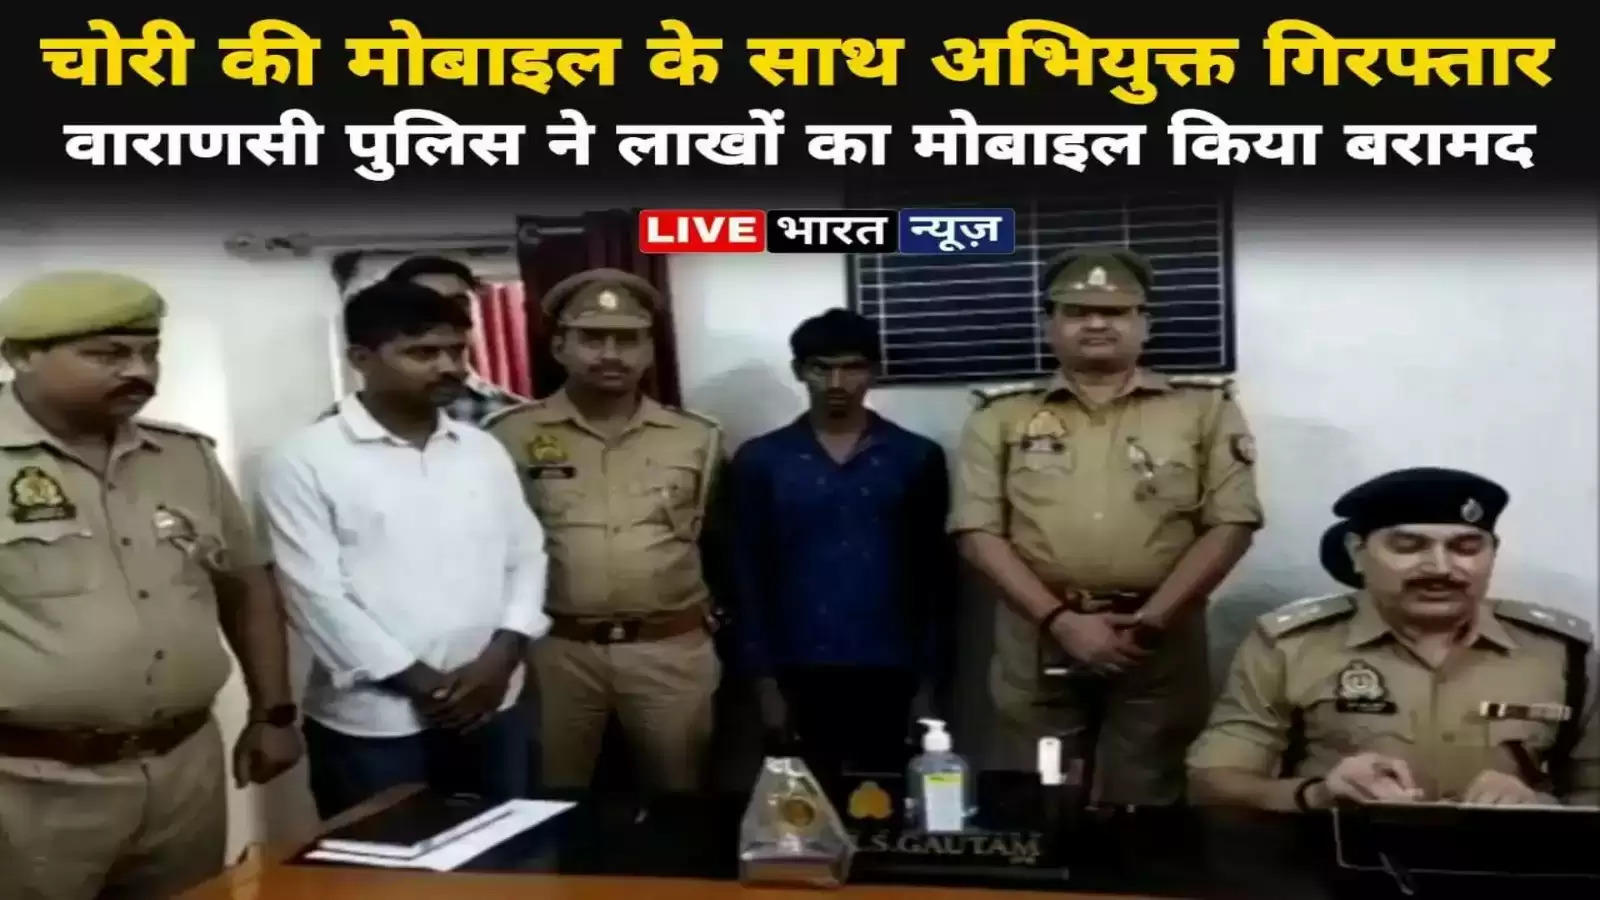 Varanasi new: वाराणसी पुलिस का good work चोरी की 12 एंड्राइड मोबाइल के साथ अभियुक्त को किया गिरफ्तार